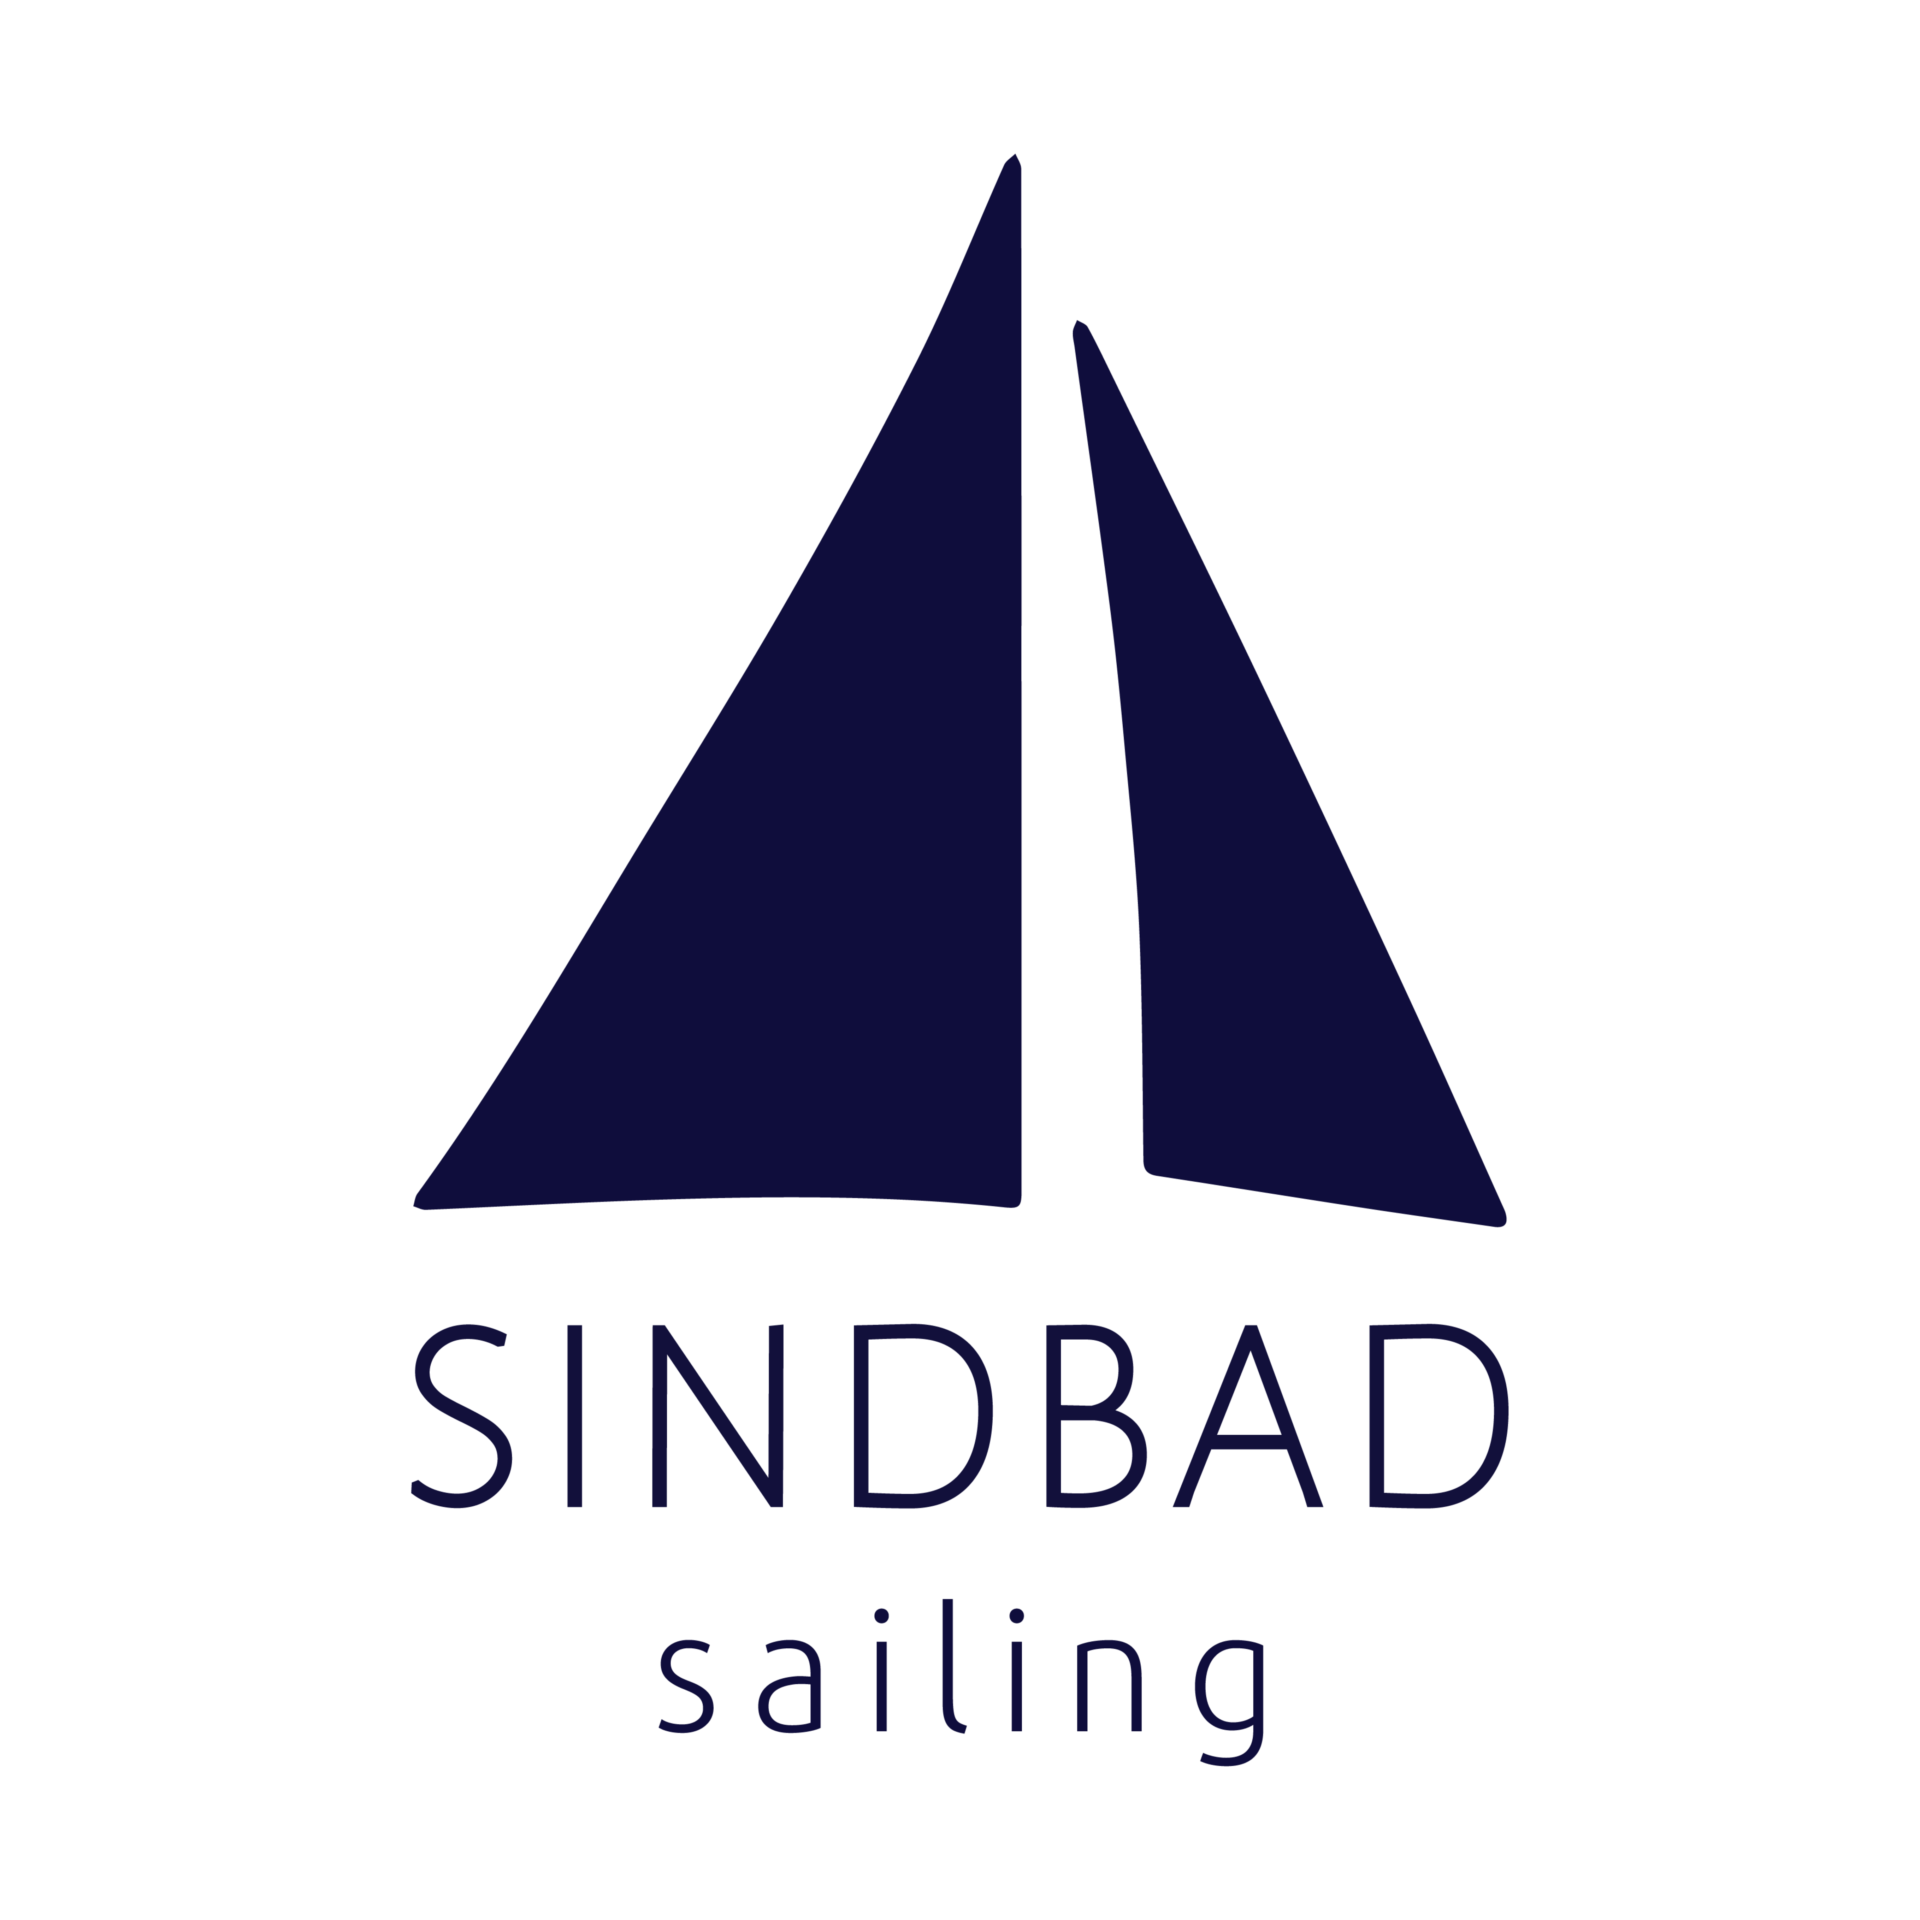 Sindbad Sailing - Klub Żeglarski